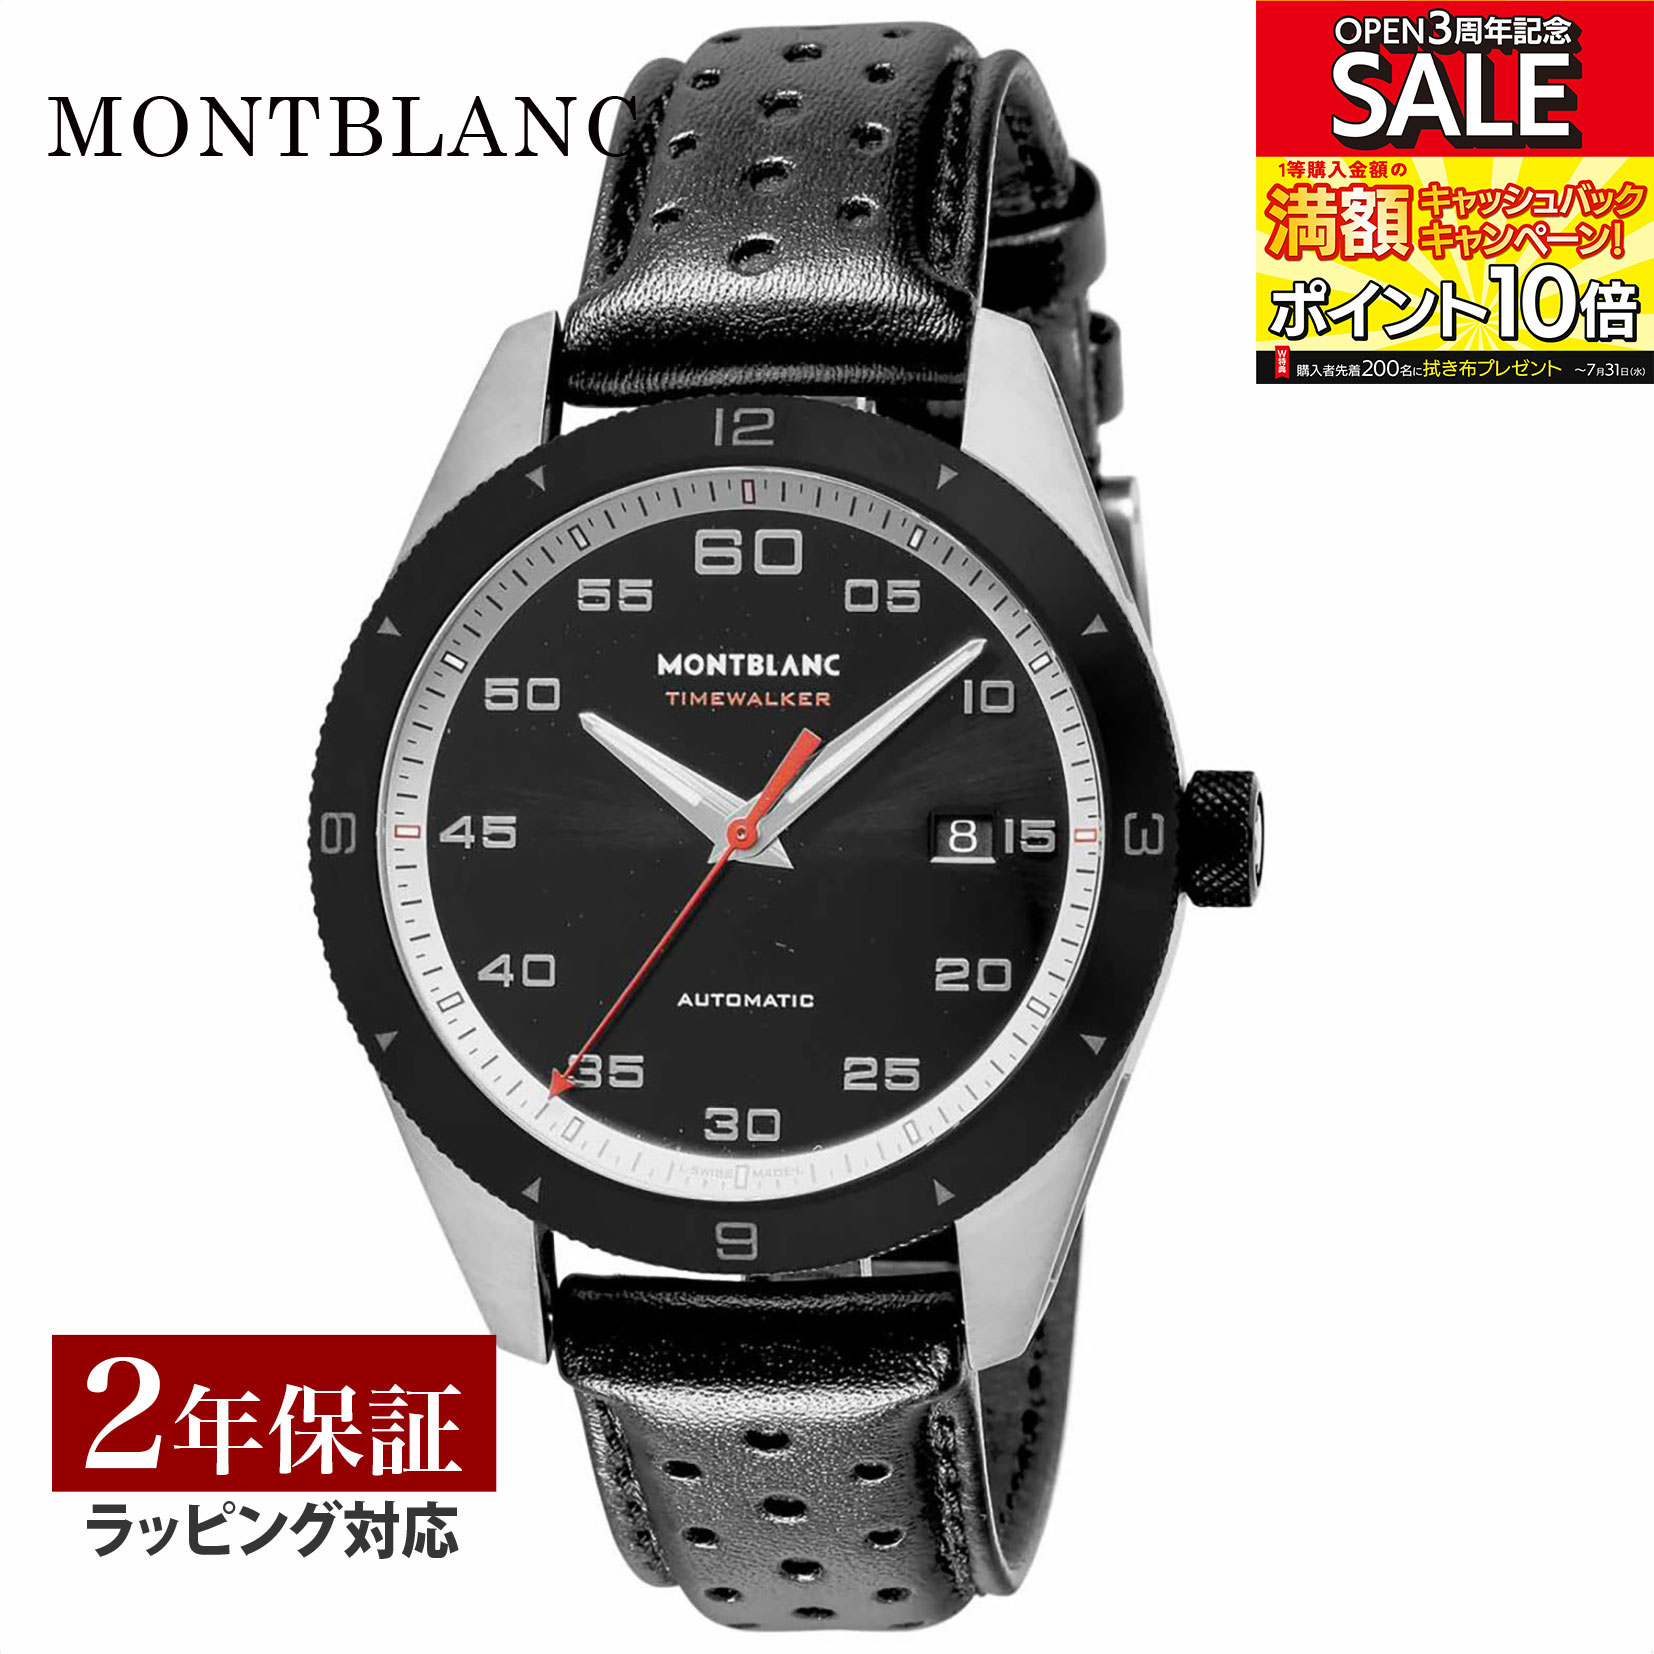 モンブラン Montblanc メンズ 時計 TIME WALKER タイムウォーカー 自動巻 ブラック 116061 時計 腕時計 高級腕時計 ブランド 【ローン金利無料】